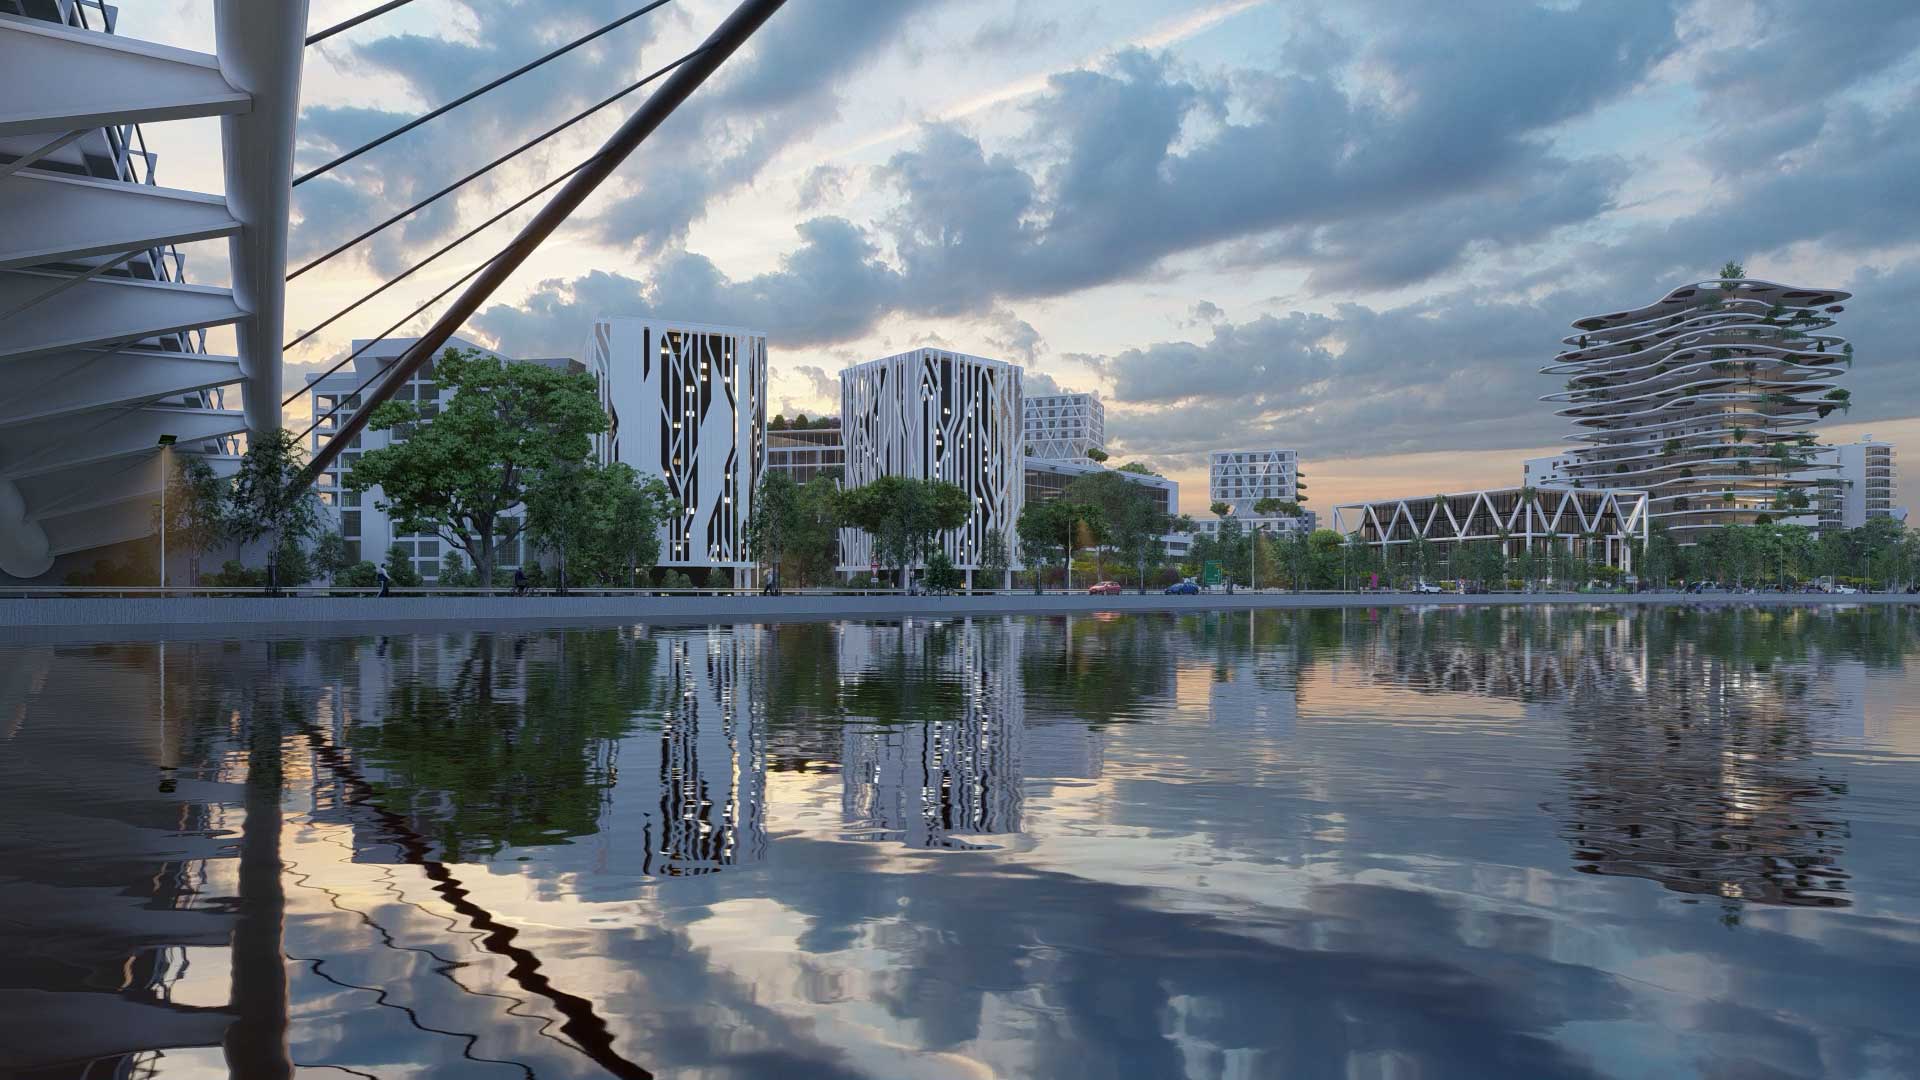 Architectes-Collectivites-images-3d-rendus-perspective-projet-urbain-vue-ensemble-pont